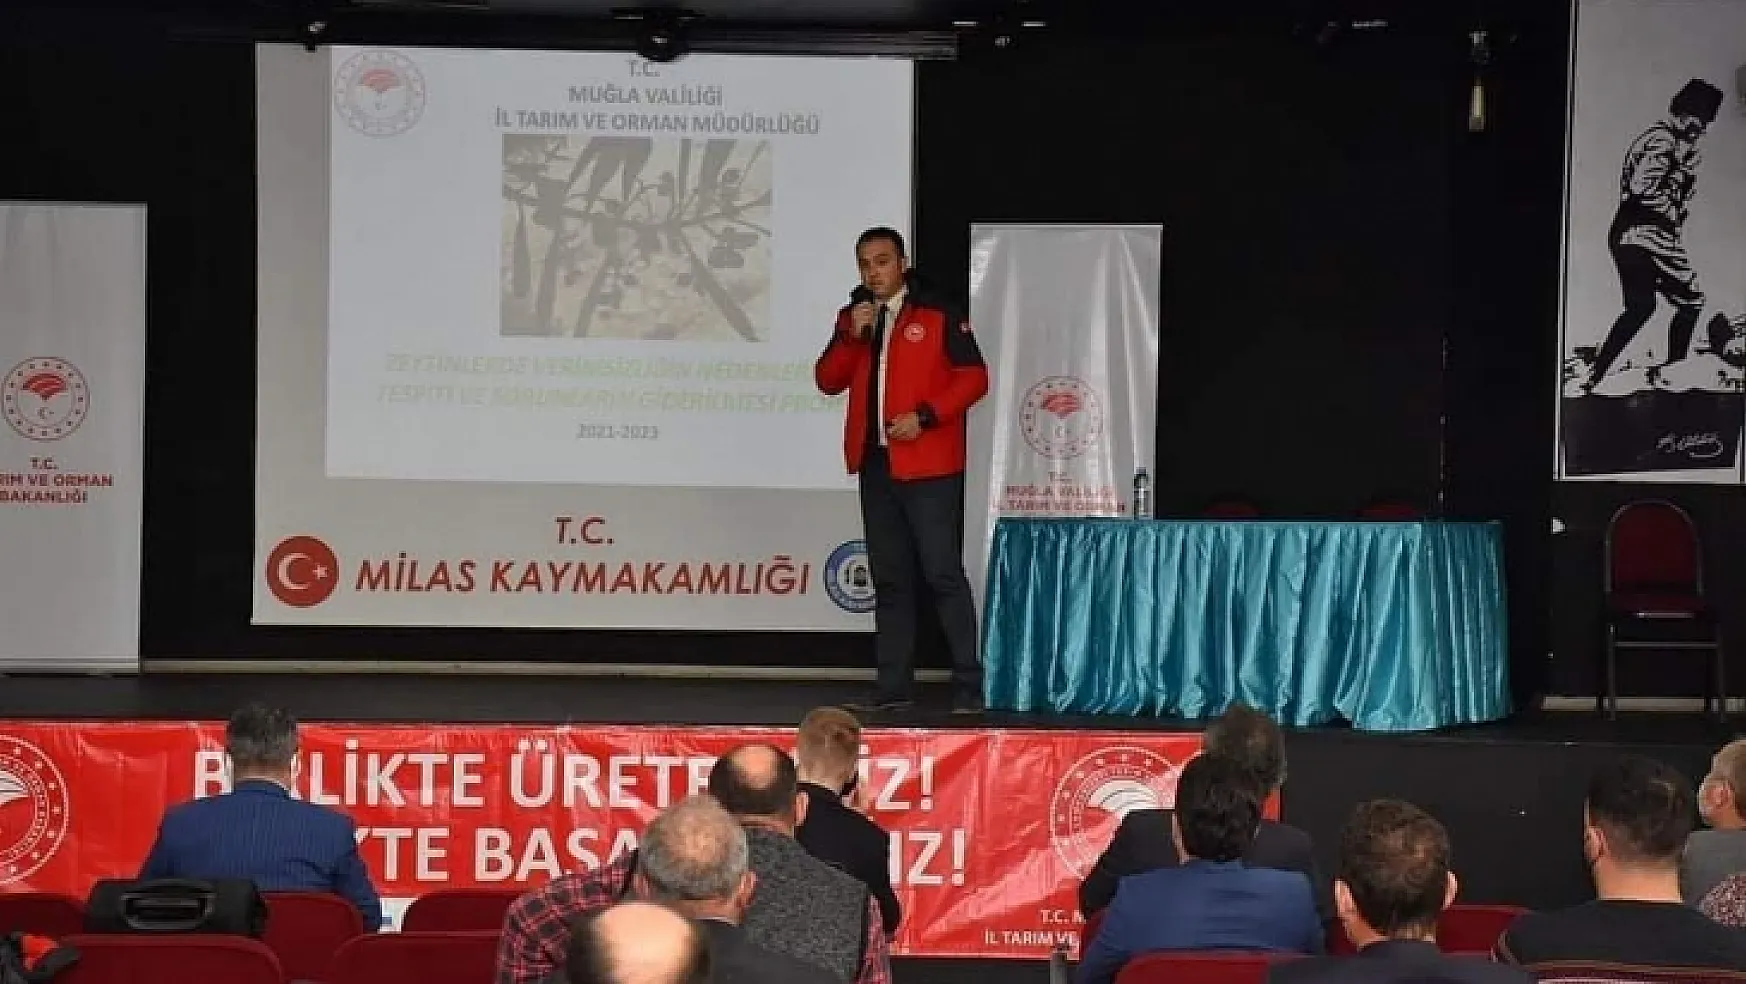 Zeytin Kenti Milas'ta Zeytinde Verimsizliğin Nedenleri ve Çözümleri Tartışıldı